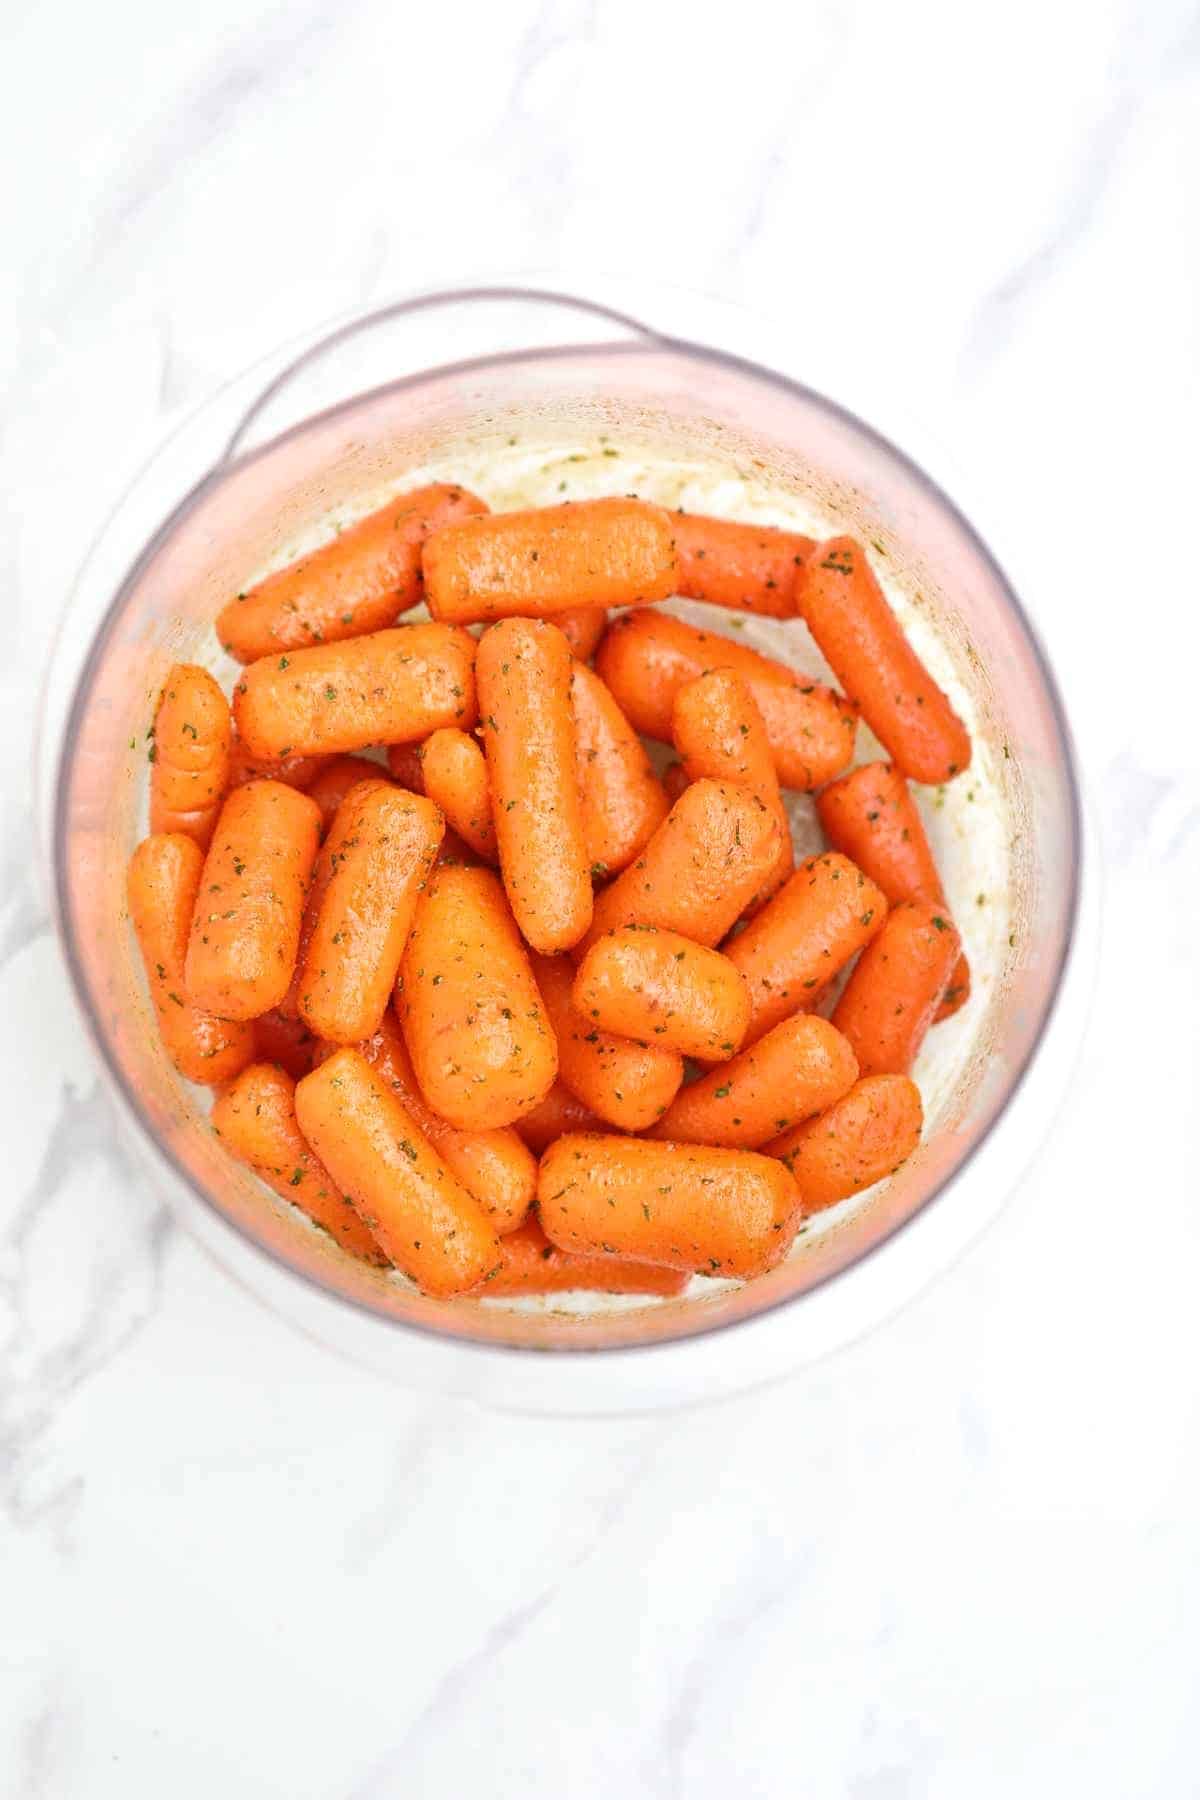 seasoned carrots in a bowl.